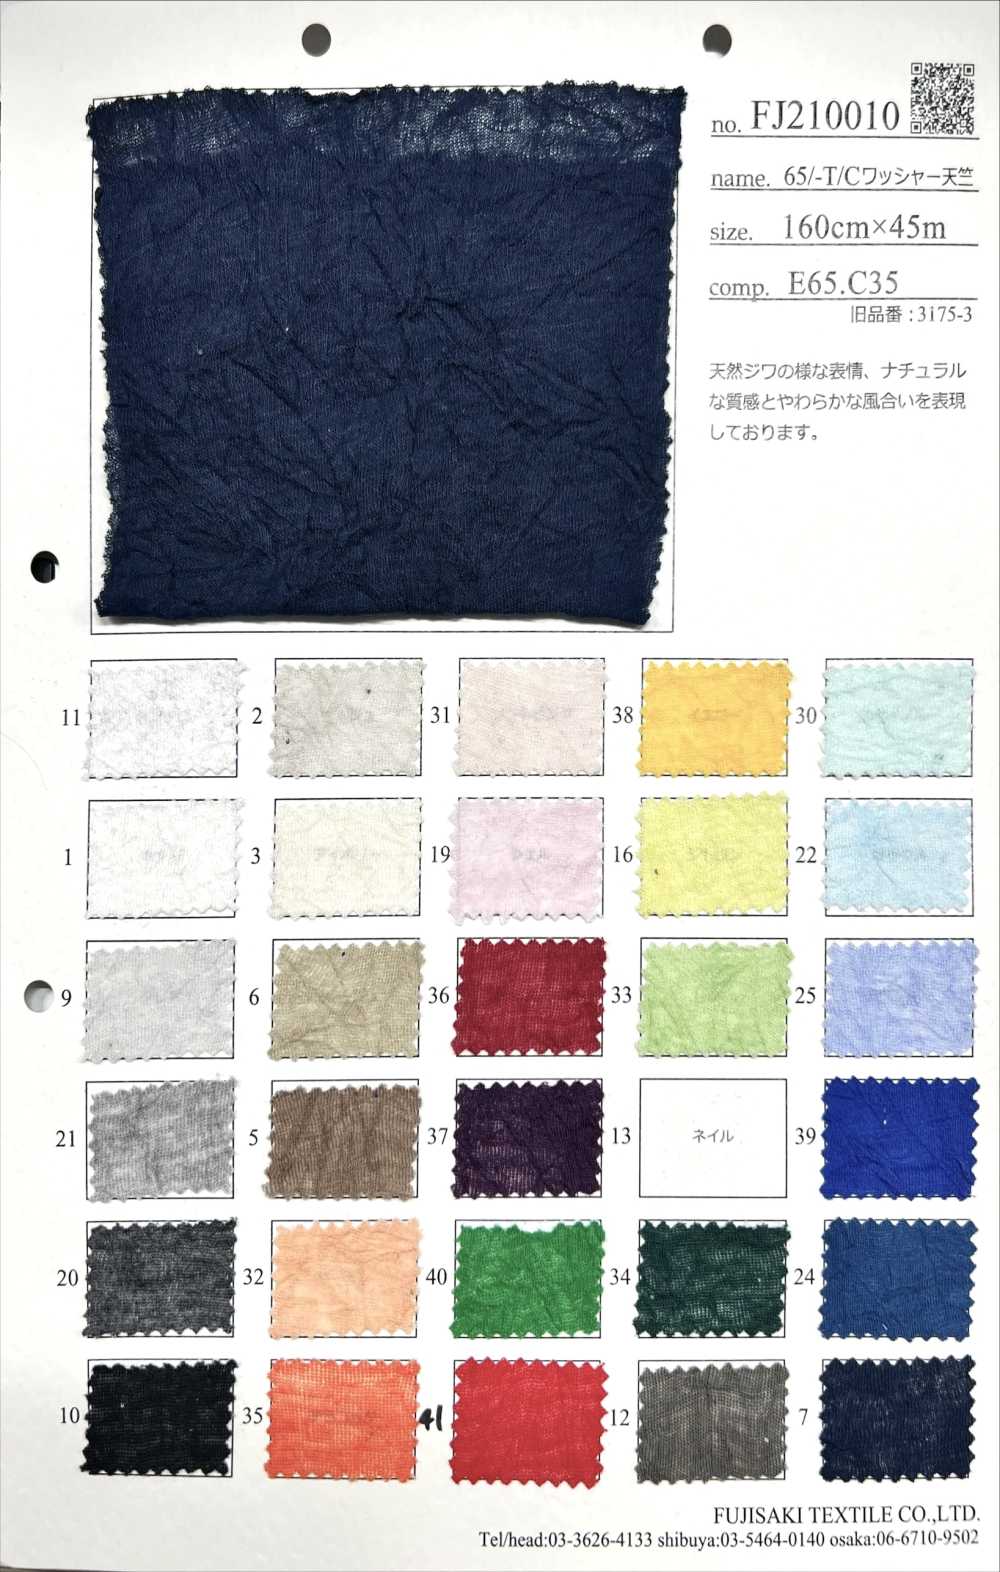 FJ210010 Jersey Traité Par Laveuse 65/-T/C[Fabrication De Textile] Fujisaki Textile